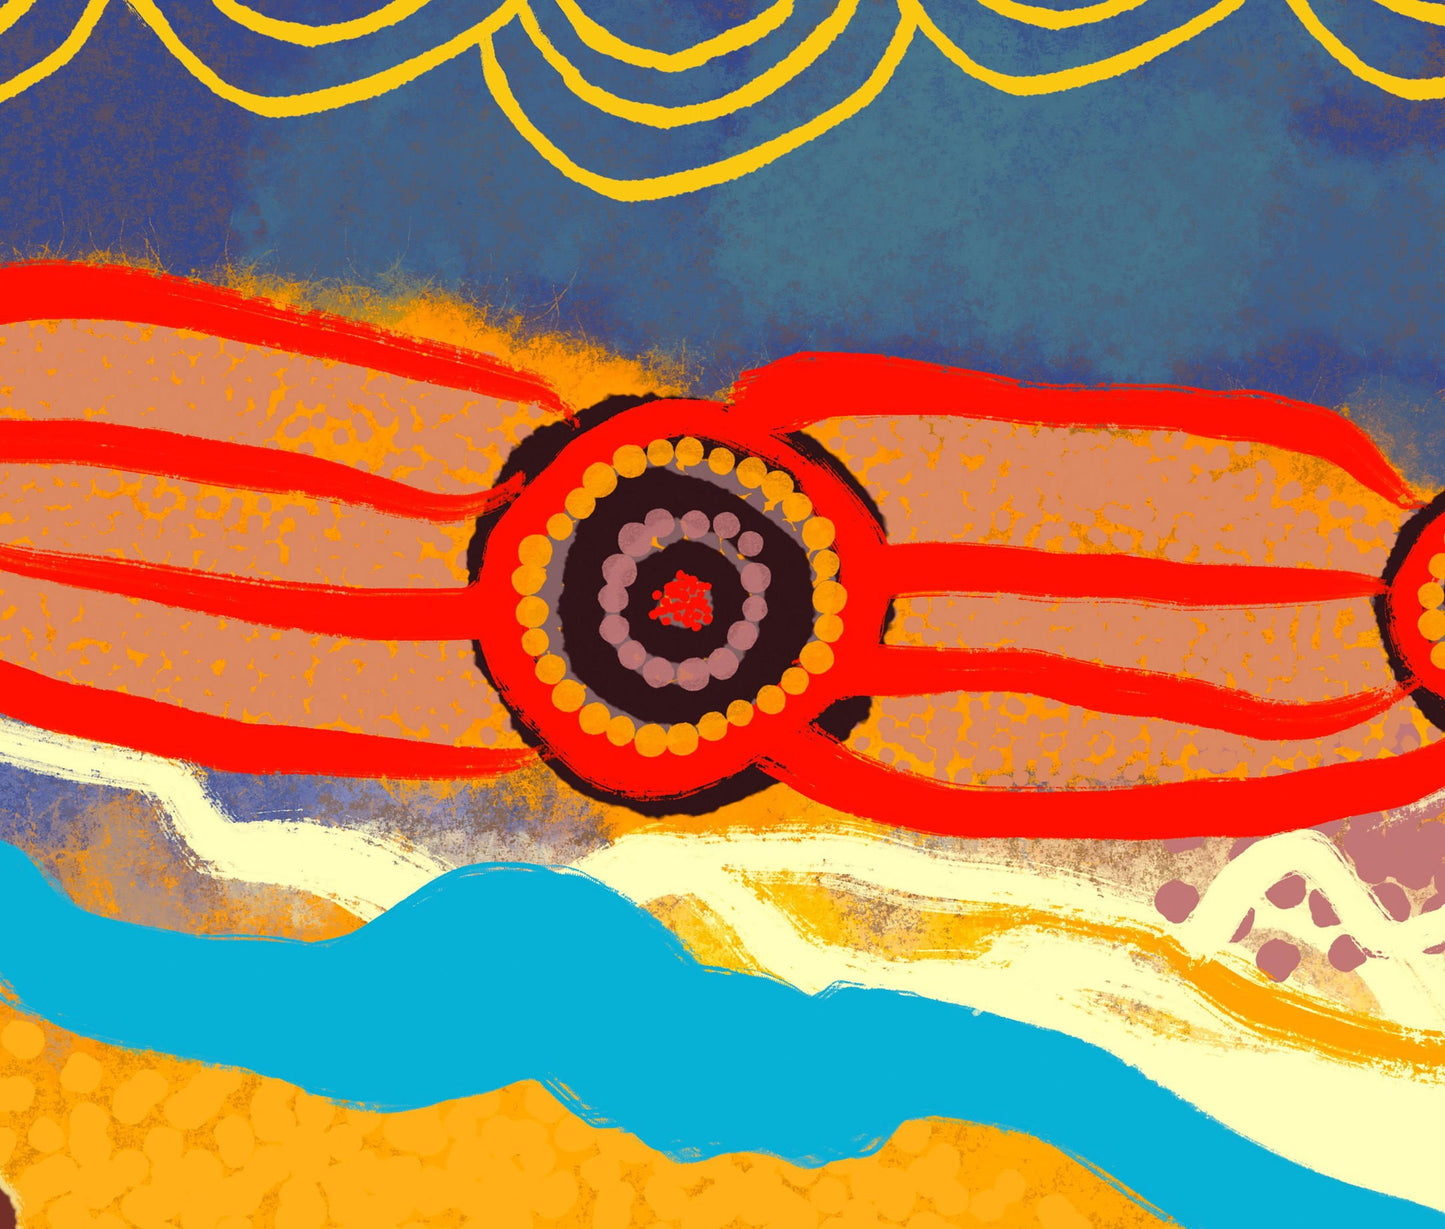 Australian Aboriginal Art Giclée Print, Print Art, Wall Art, Abstract Print, Art Prints Watercolor, Artwork Original, Modern Wall Art